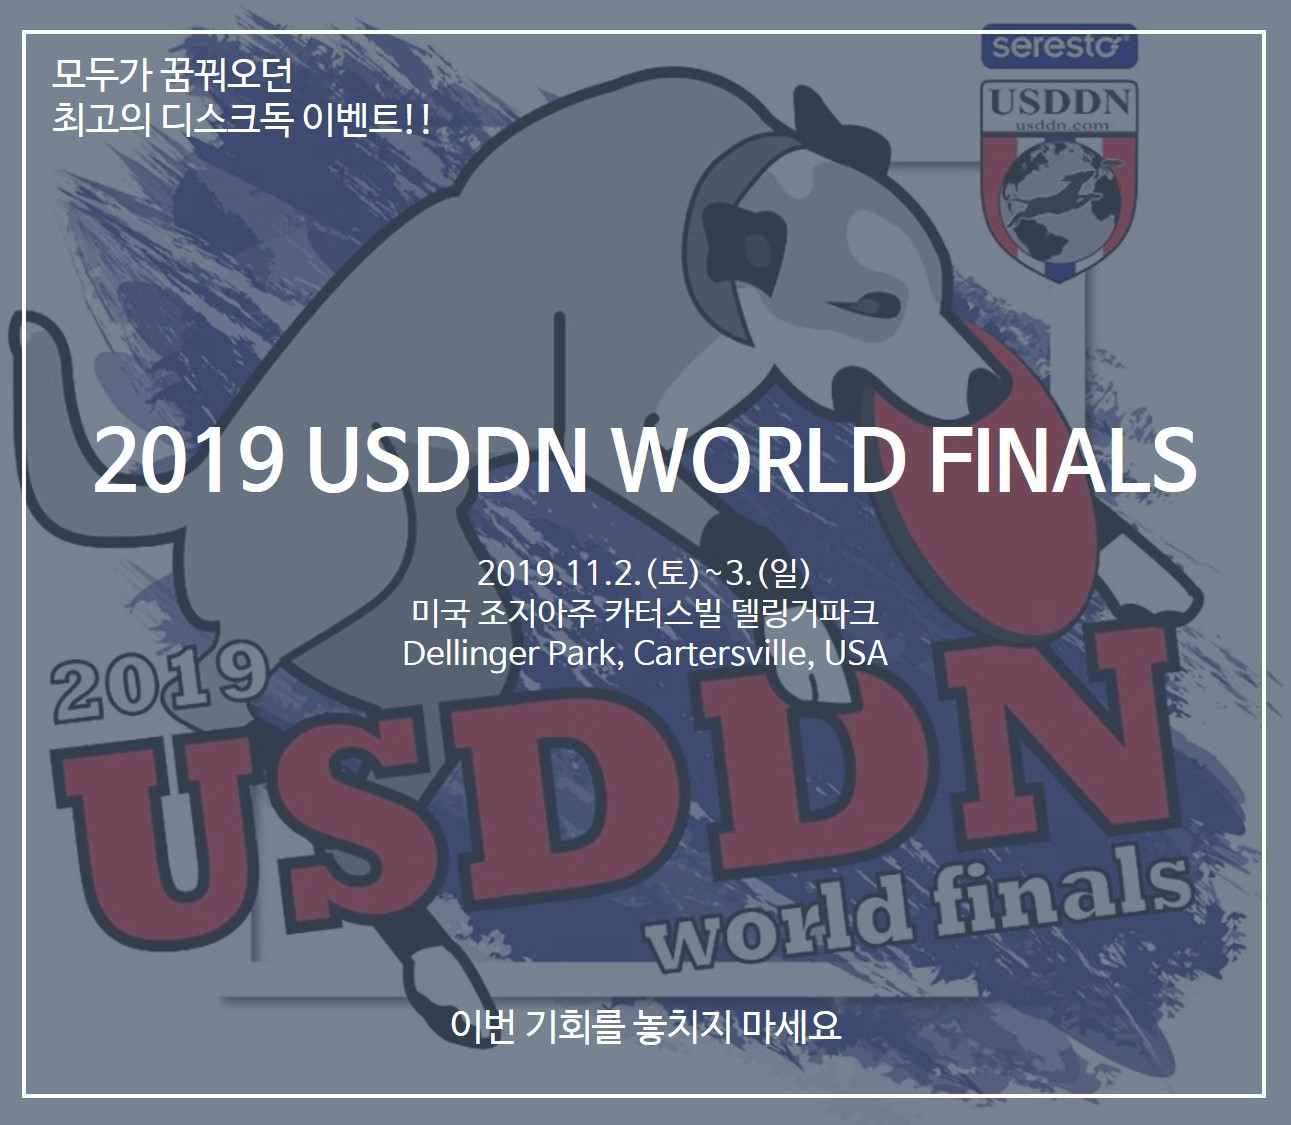 2019 USDDN World Finals 참가안내